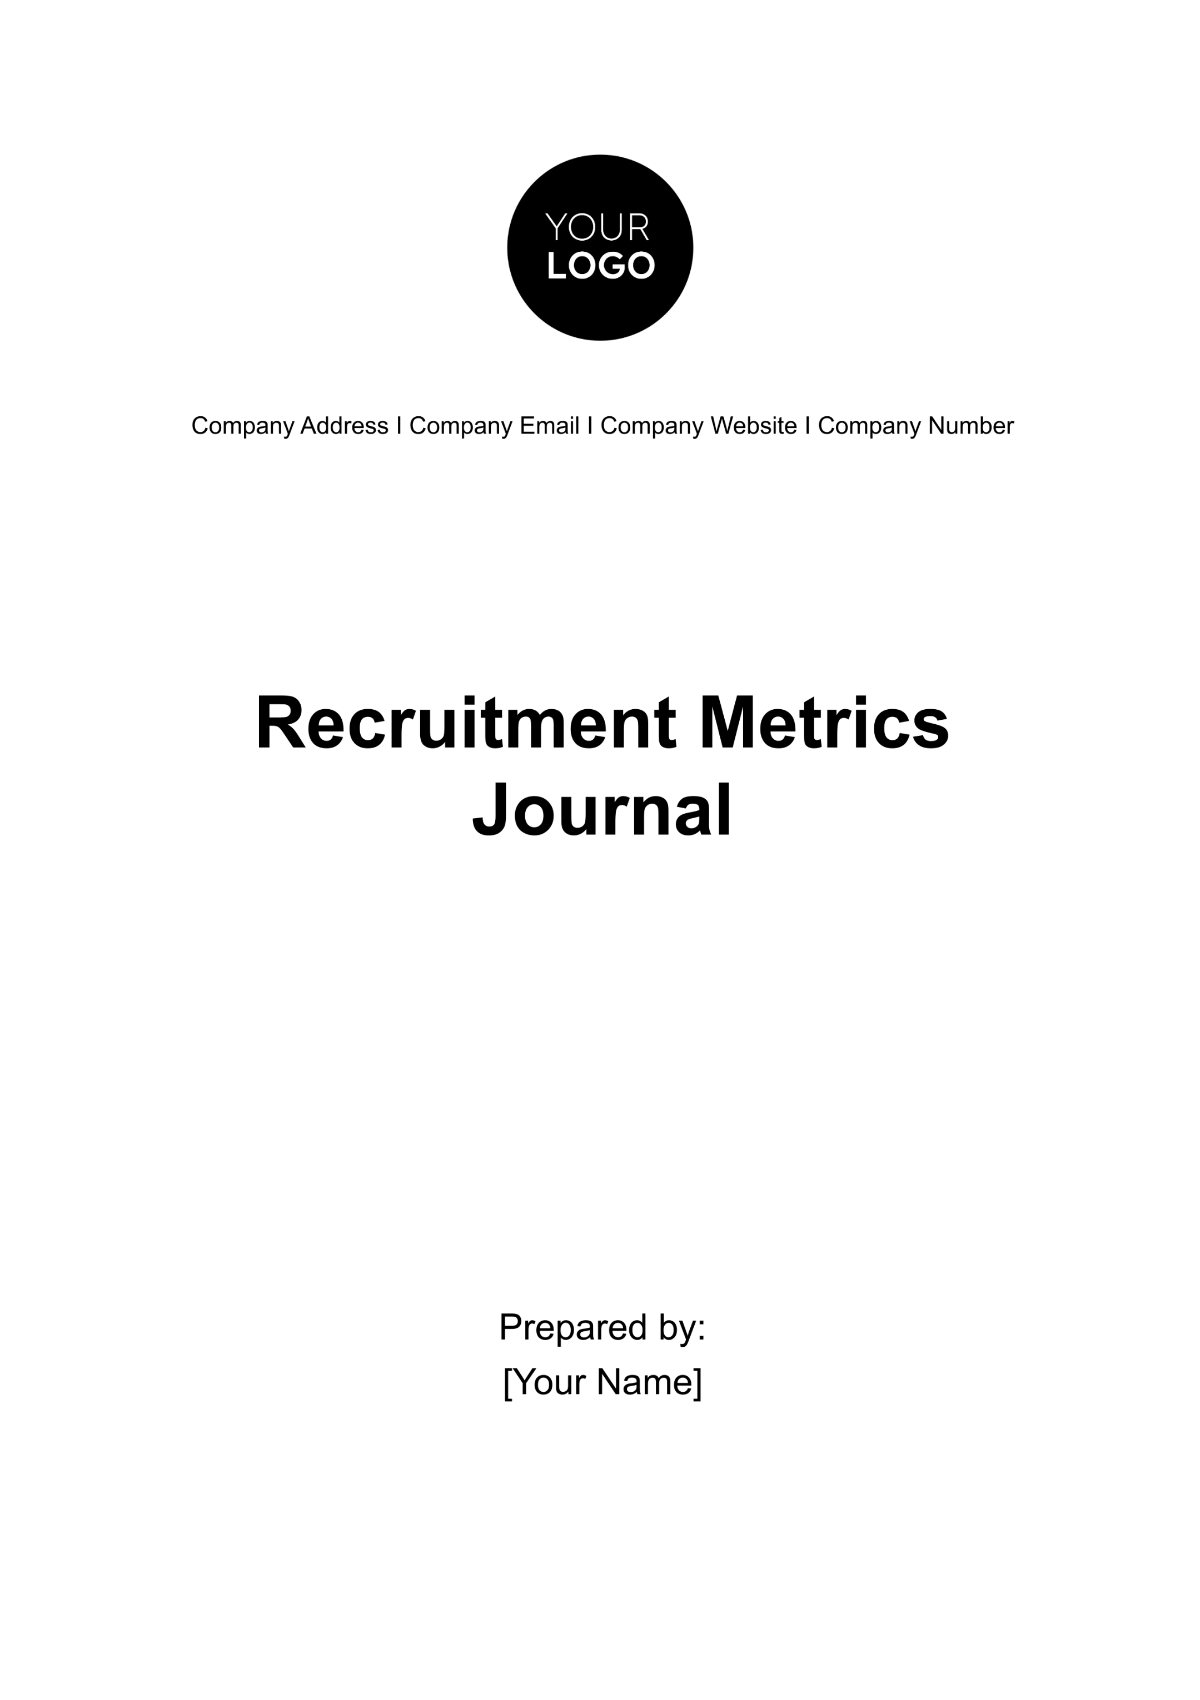 Free Recruitment Metrics Journal HR Template